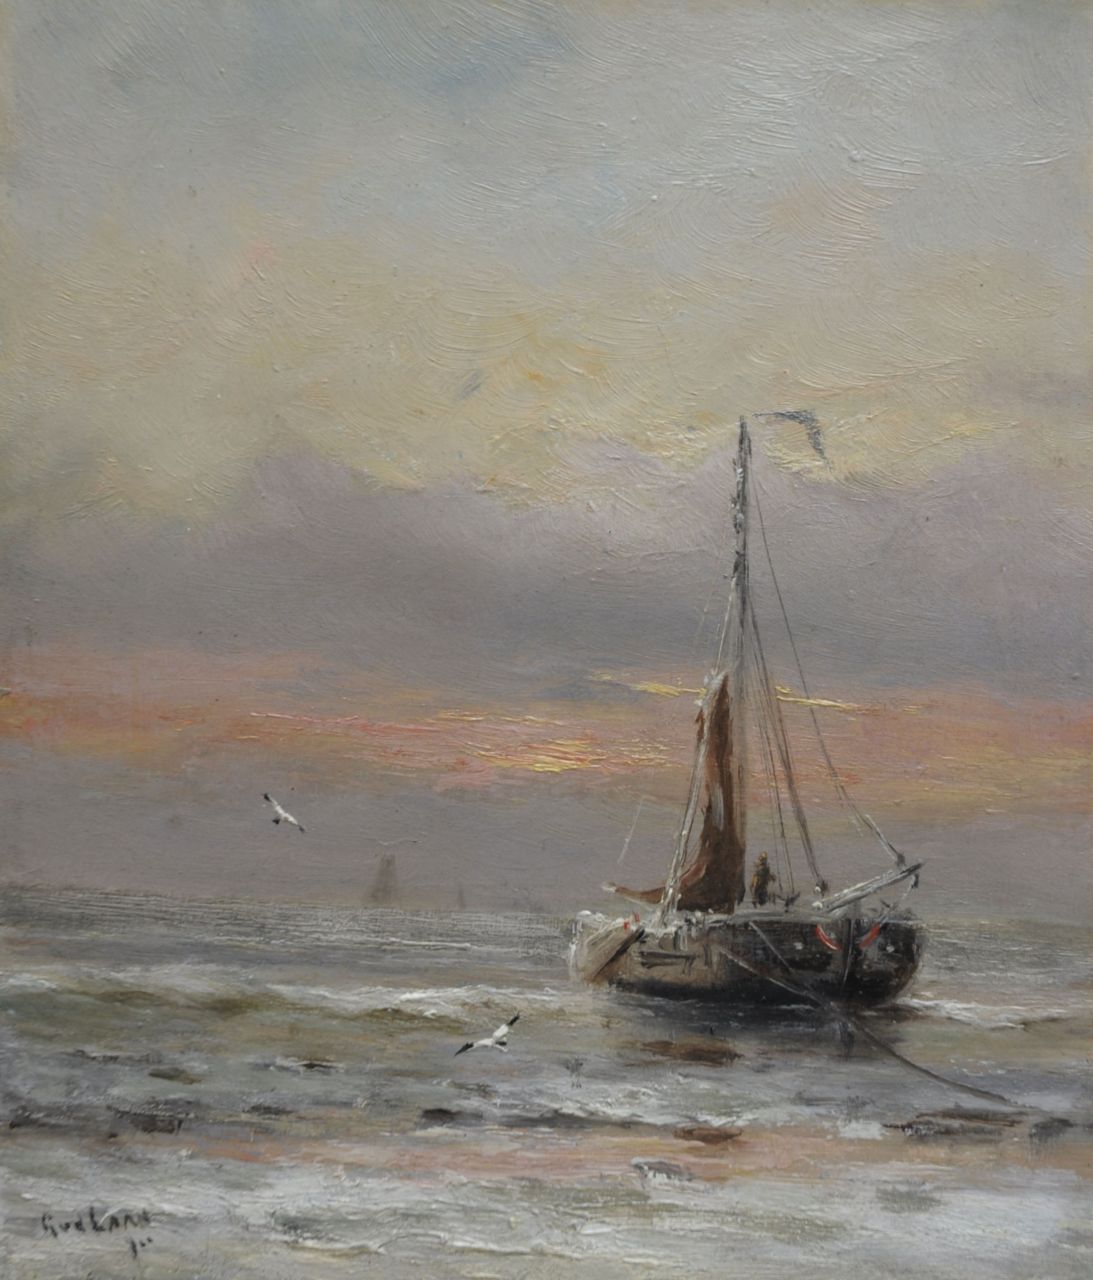 Laan G. van der | Gerard van der Laan, Winter aan het strand, olieverf op schildersboard 19,3 x 16,9 cm, gesigneerd linksonder